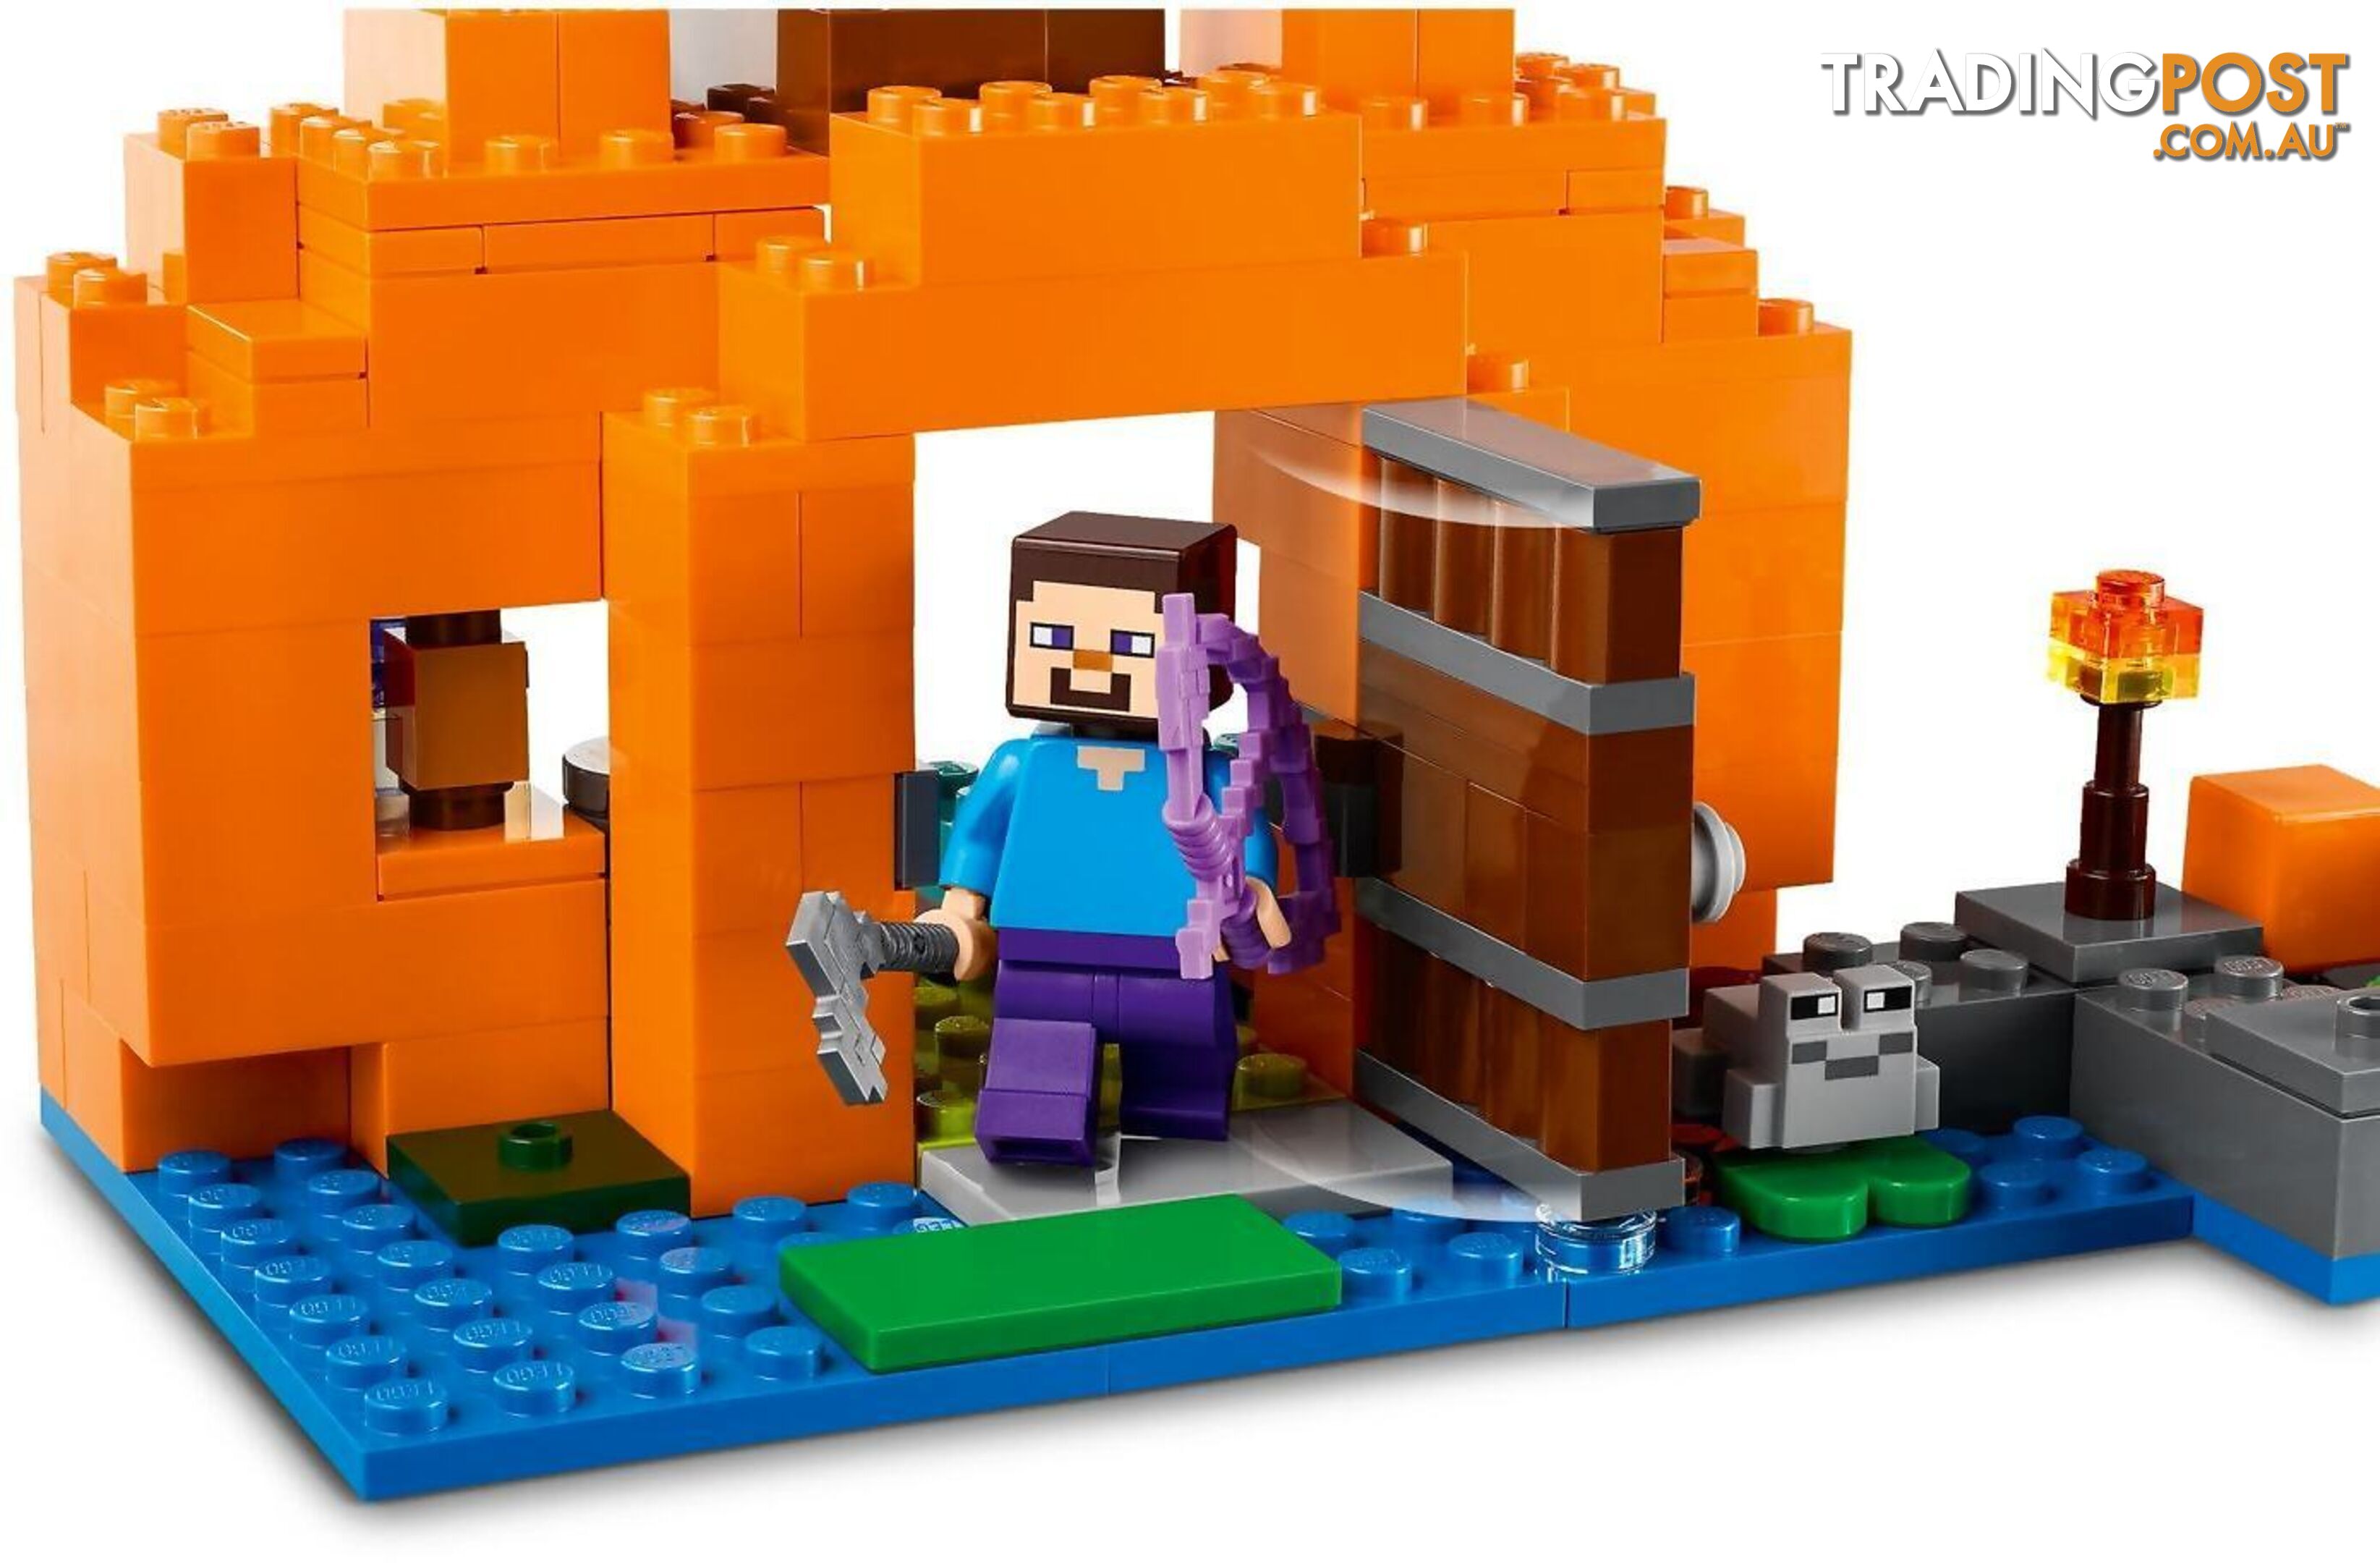 LEGO 21248 The Pumpkin Farm - Minecraft - 5702017415833